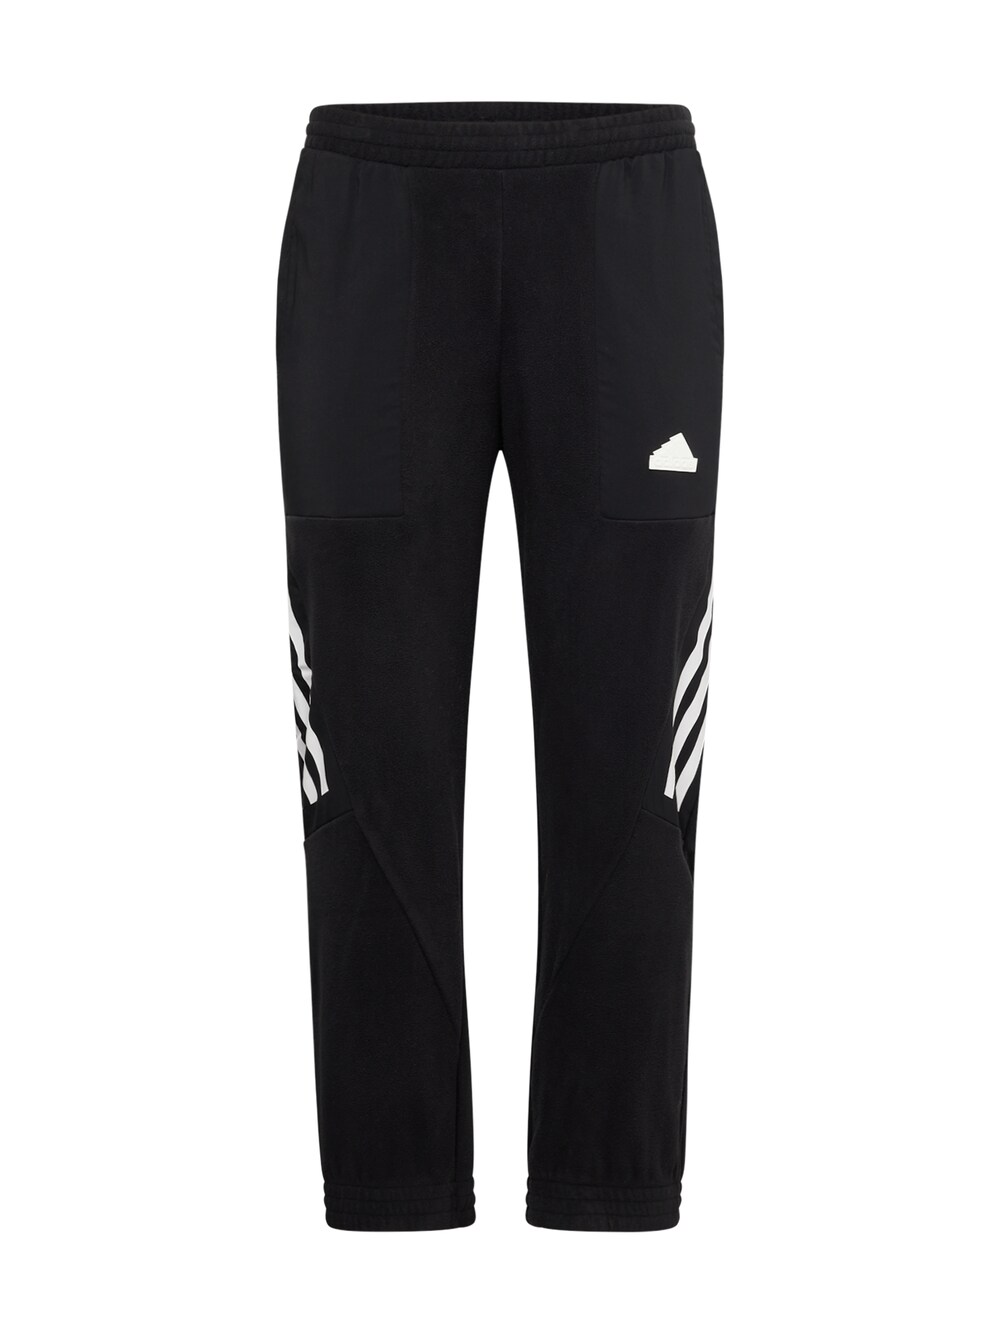 Зауженные тренировочные брюки Adidas Future Icons, черный